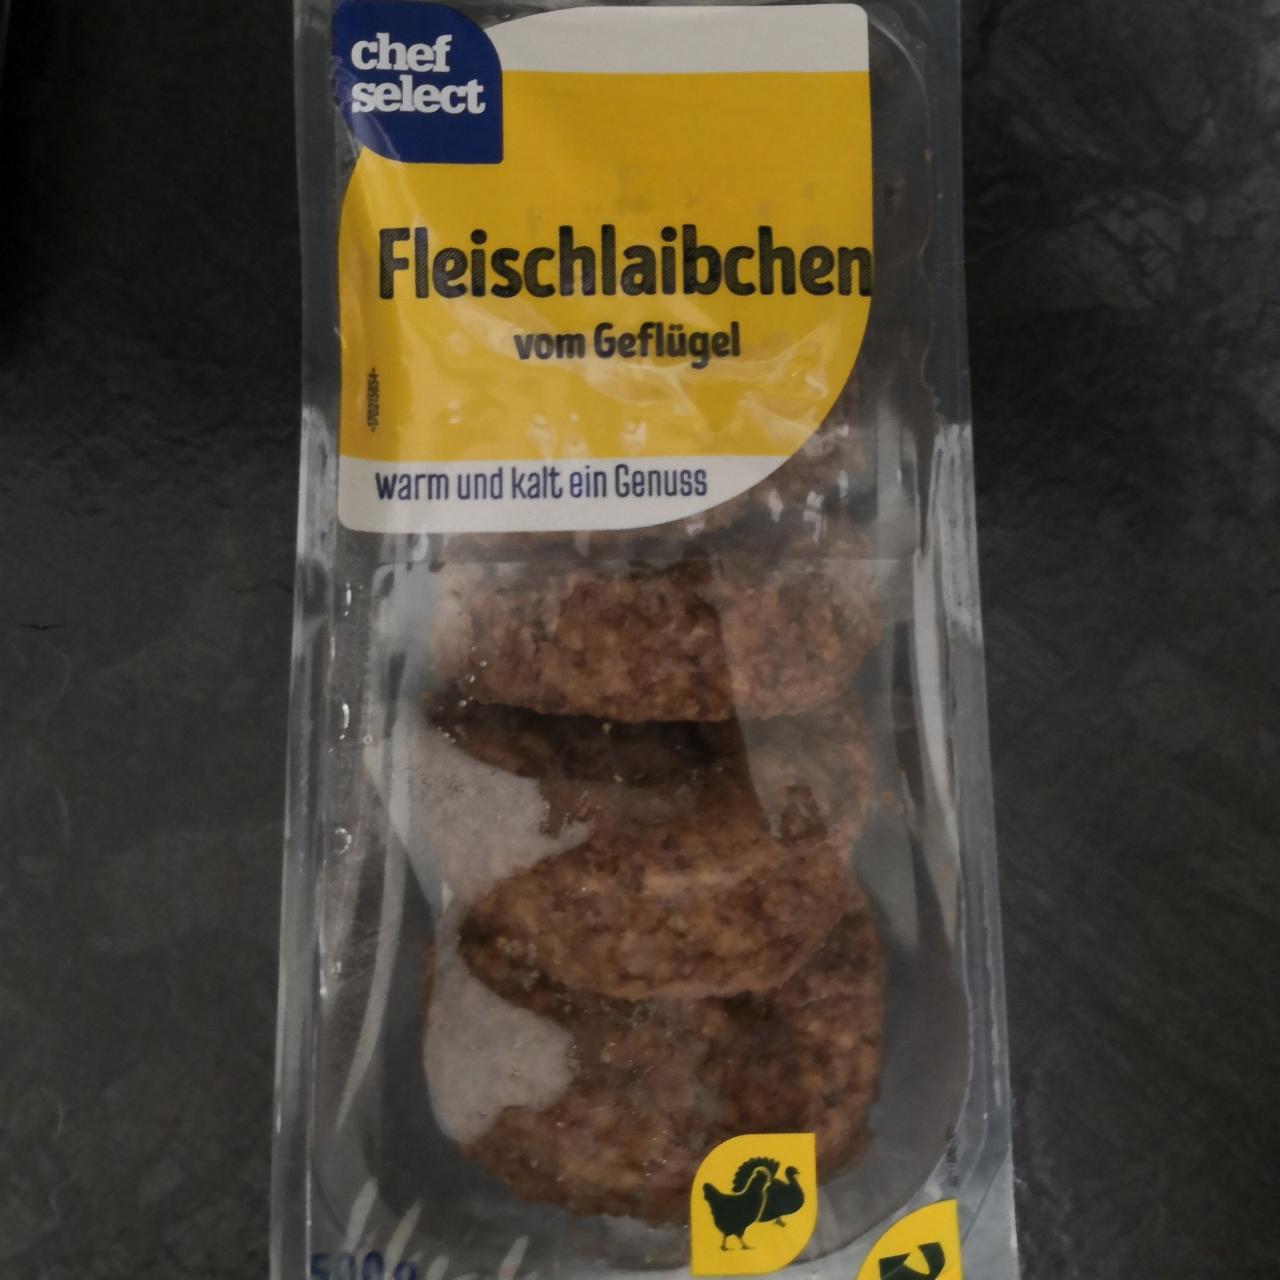 Fotografie - Fleischlaibchen vom Geflügel Chef select